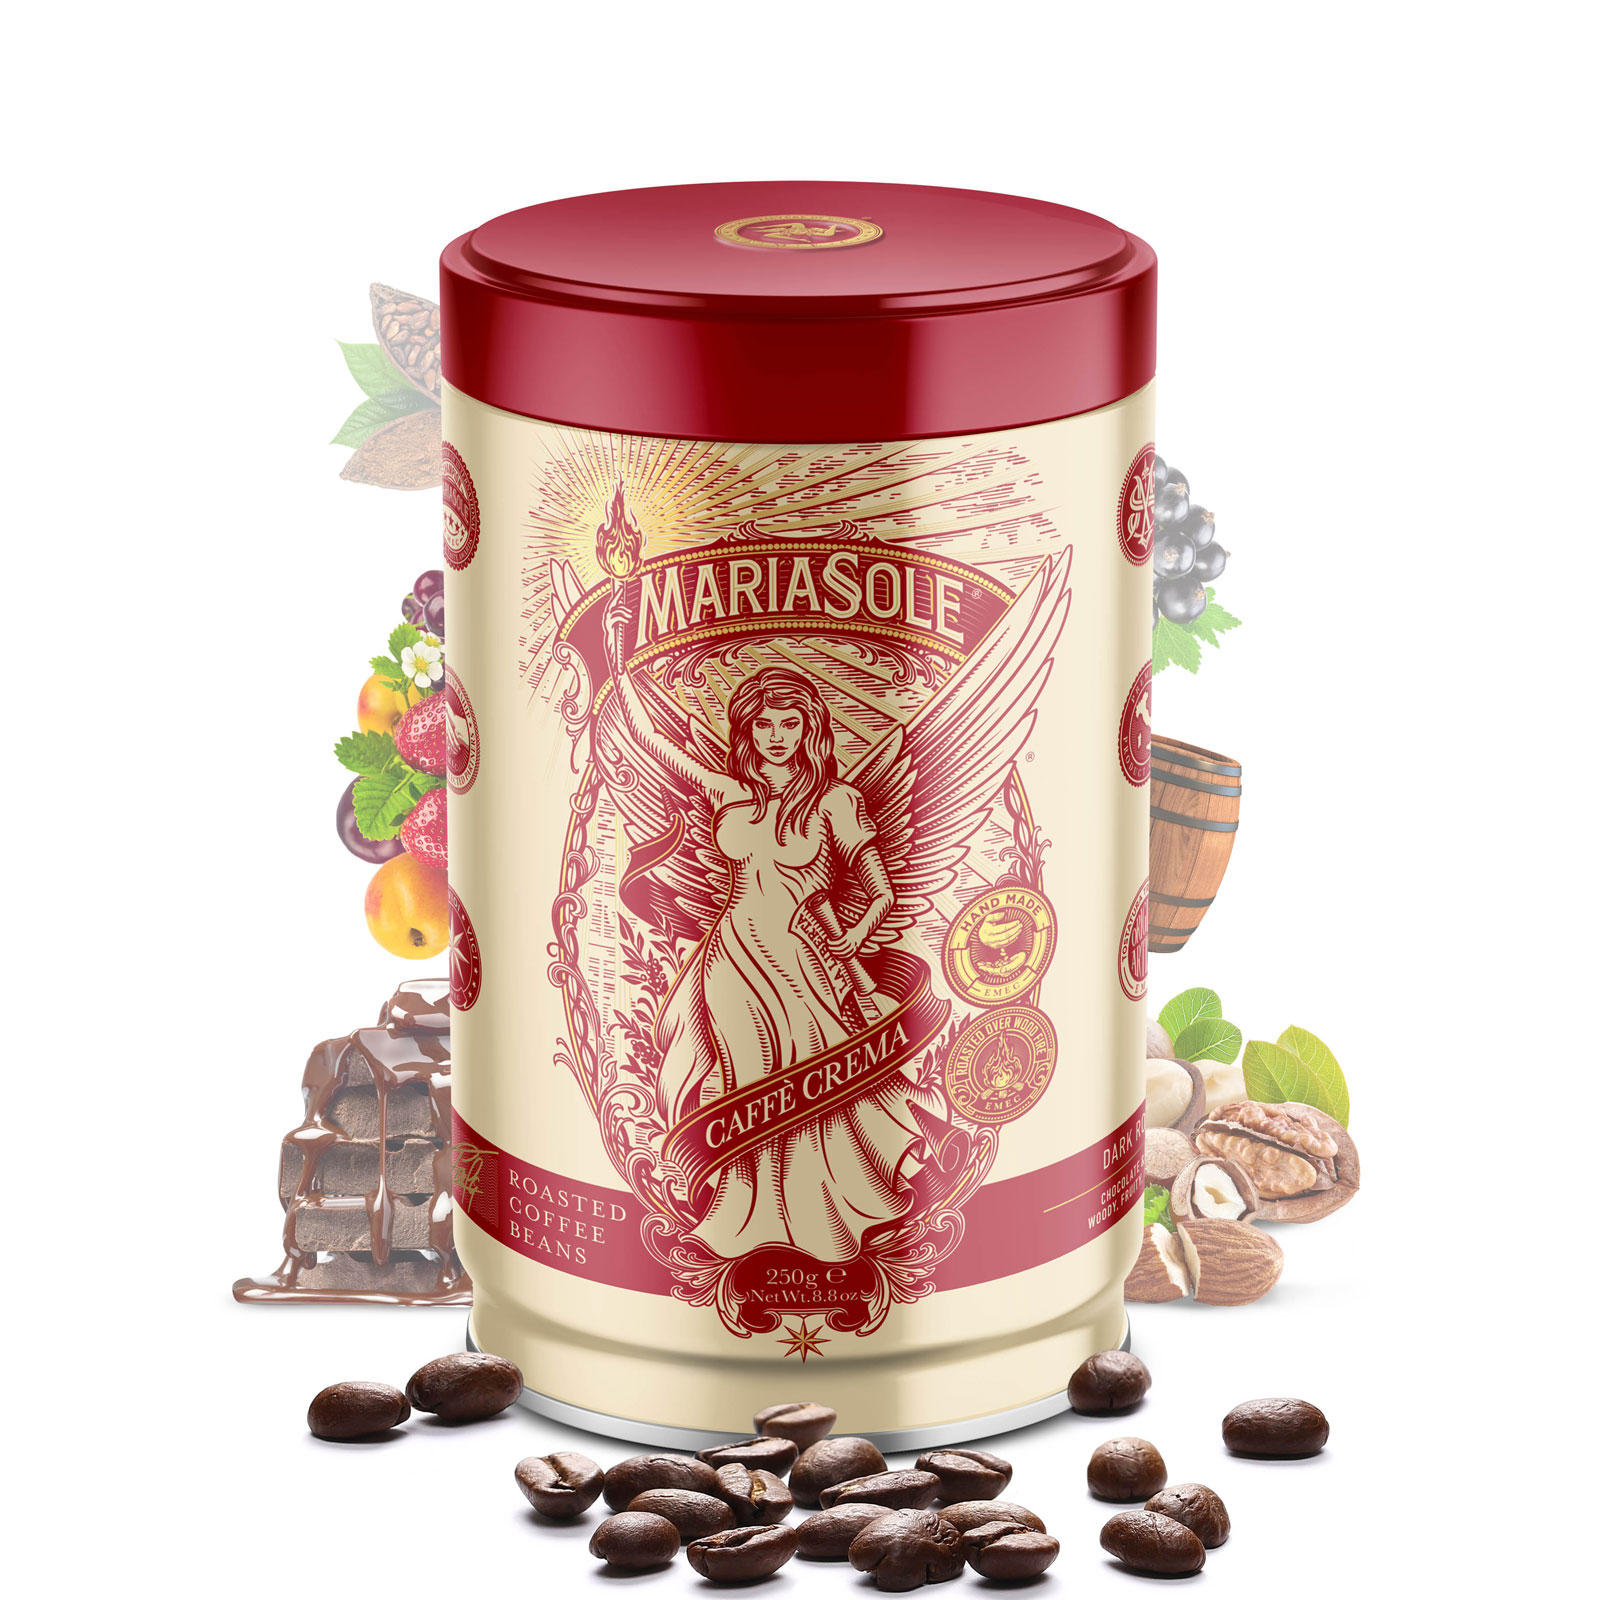 MARIASOLE - Caffè  Crema - 250g - Bohnen